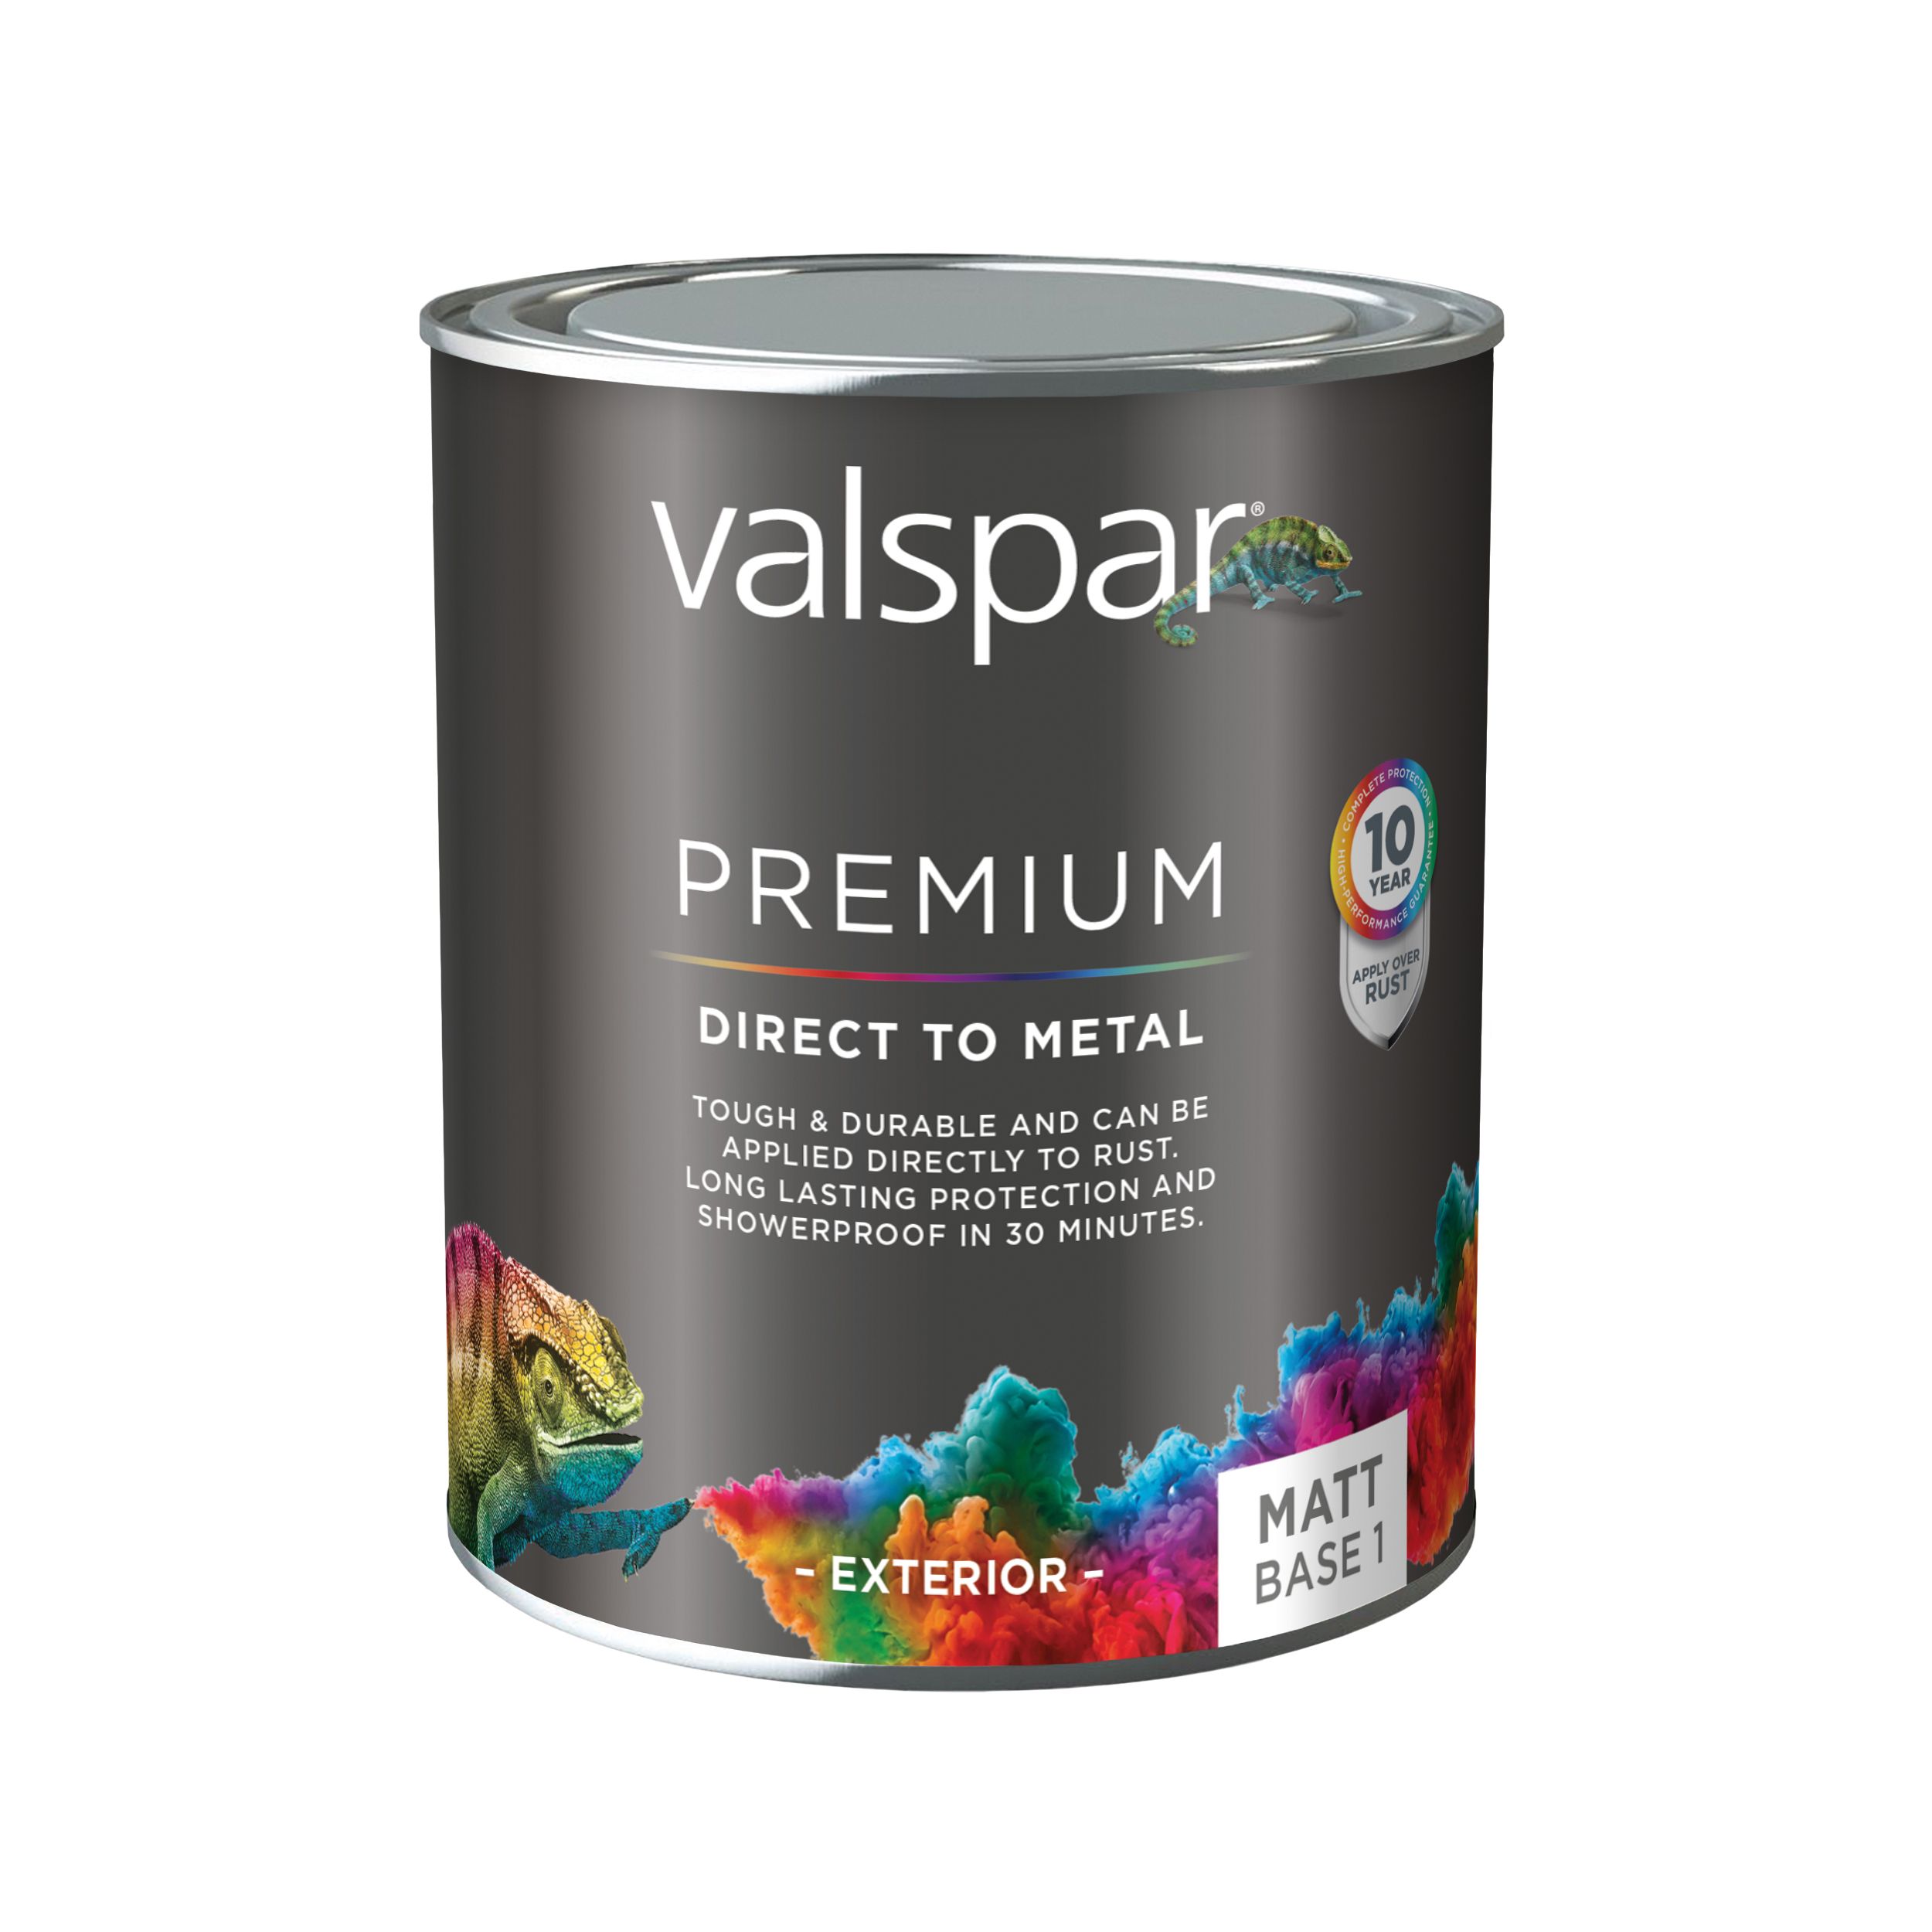 Valspar Premium Direct to Metal Exterior Metal & wood Matt Basecoat, Mixed, Base A, 750ml